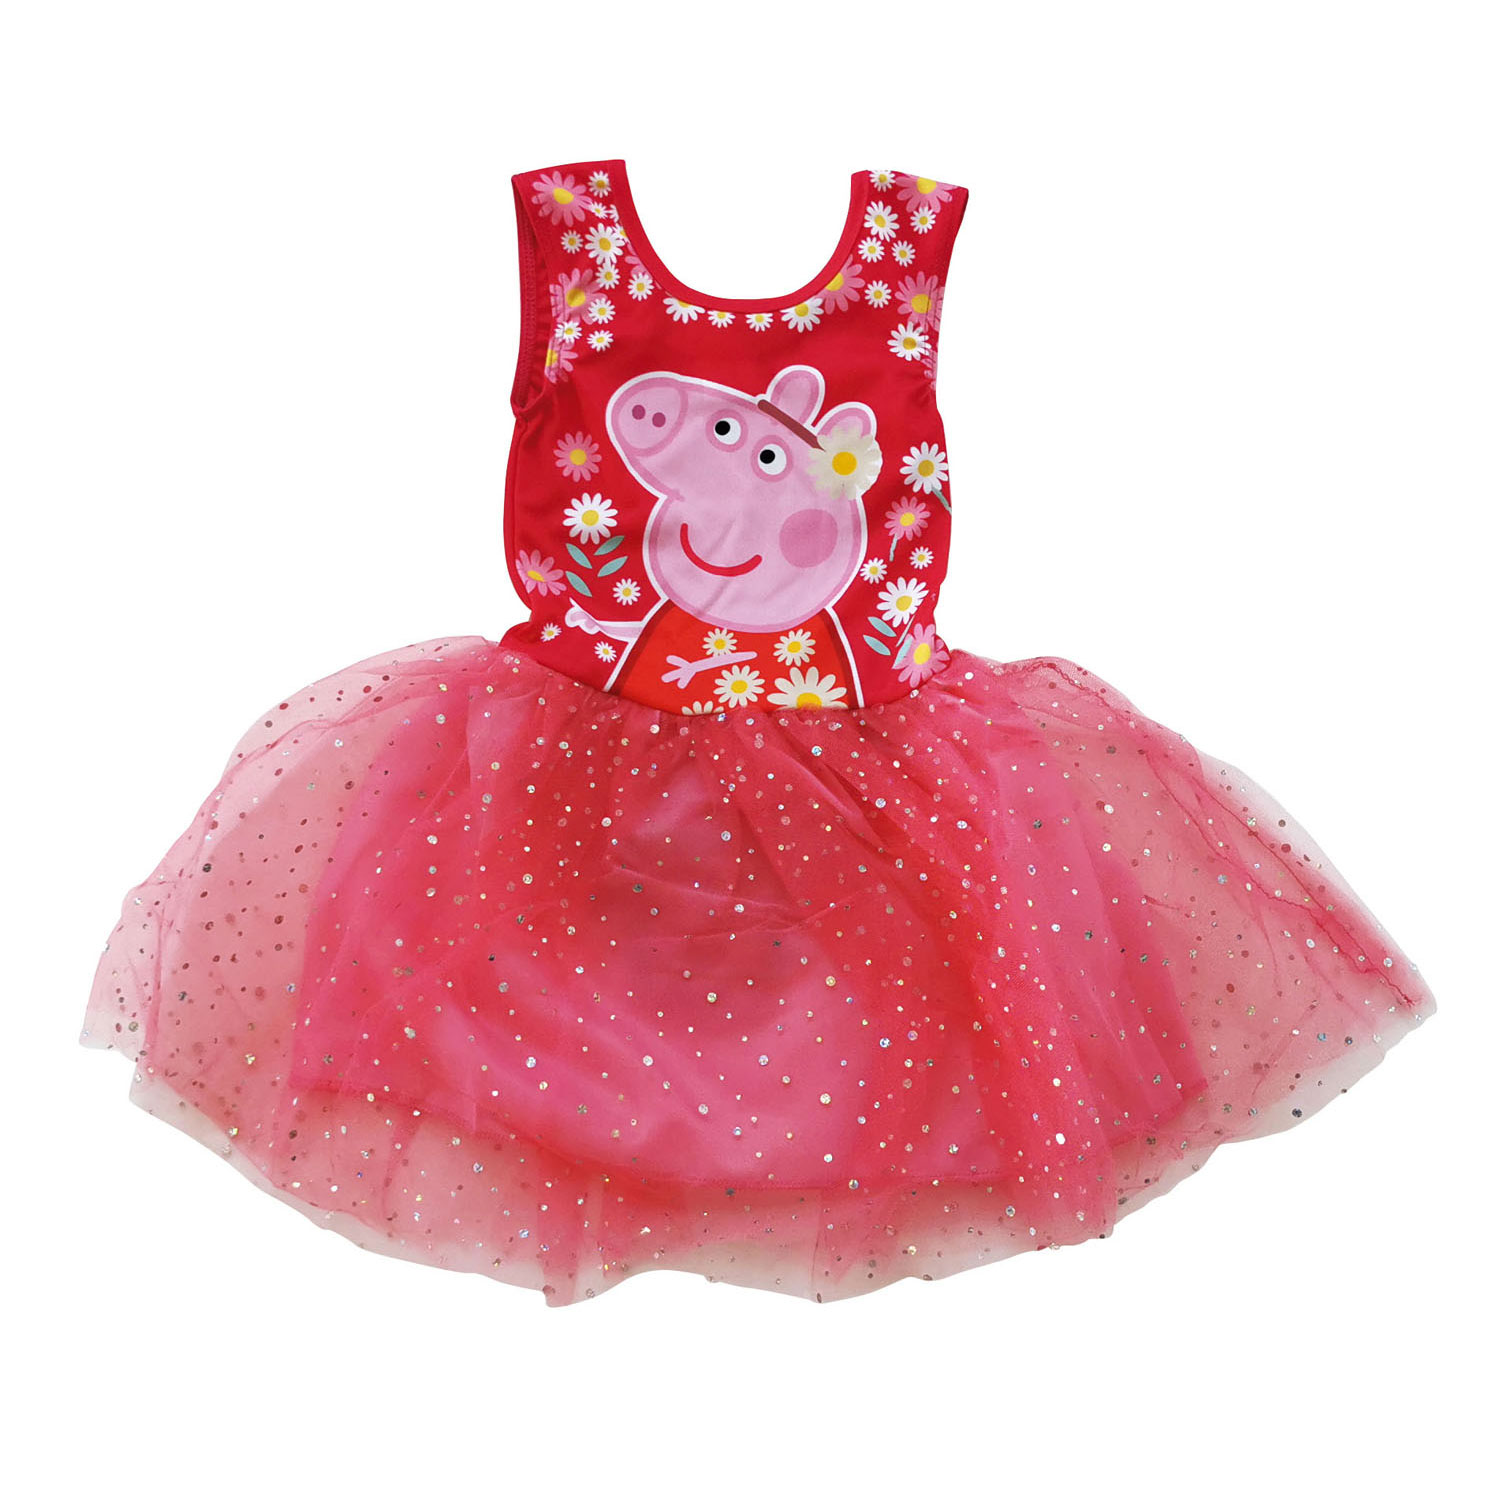 Peps Pig sehr schönes Kleid  Neu